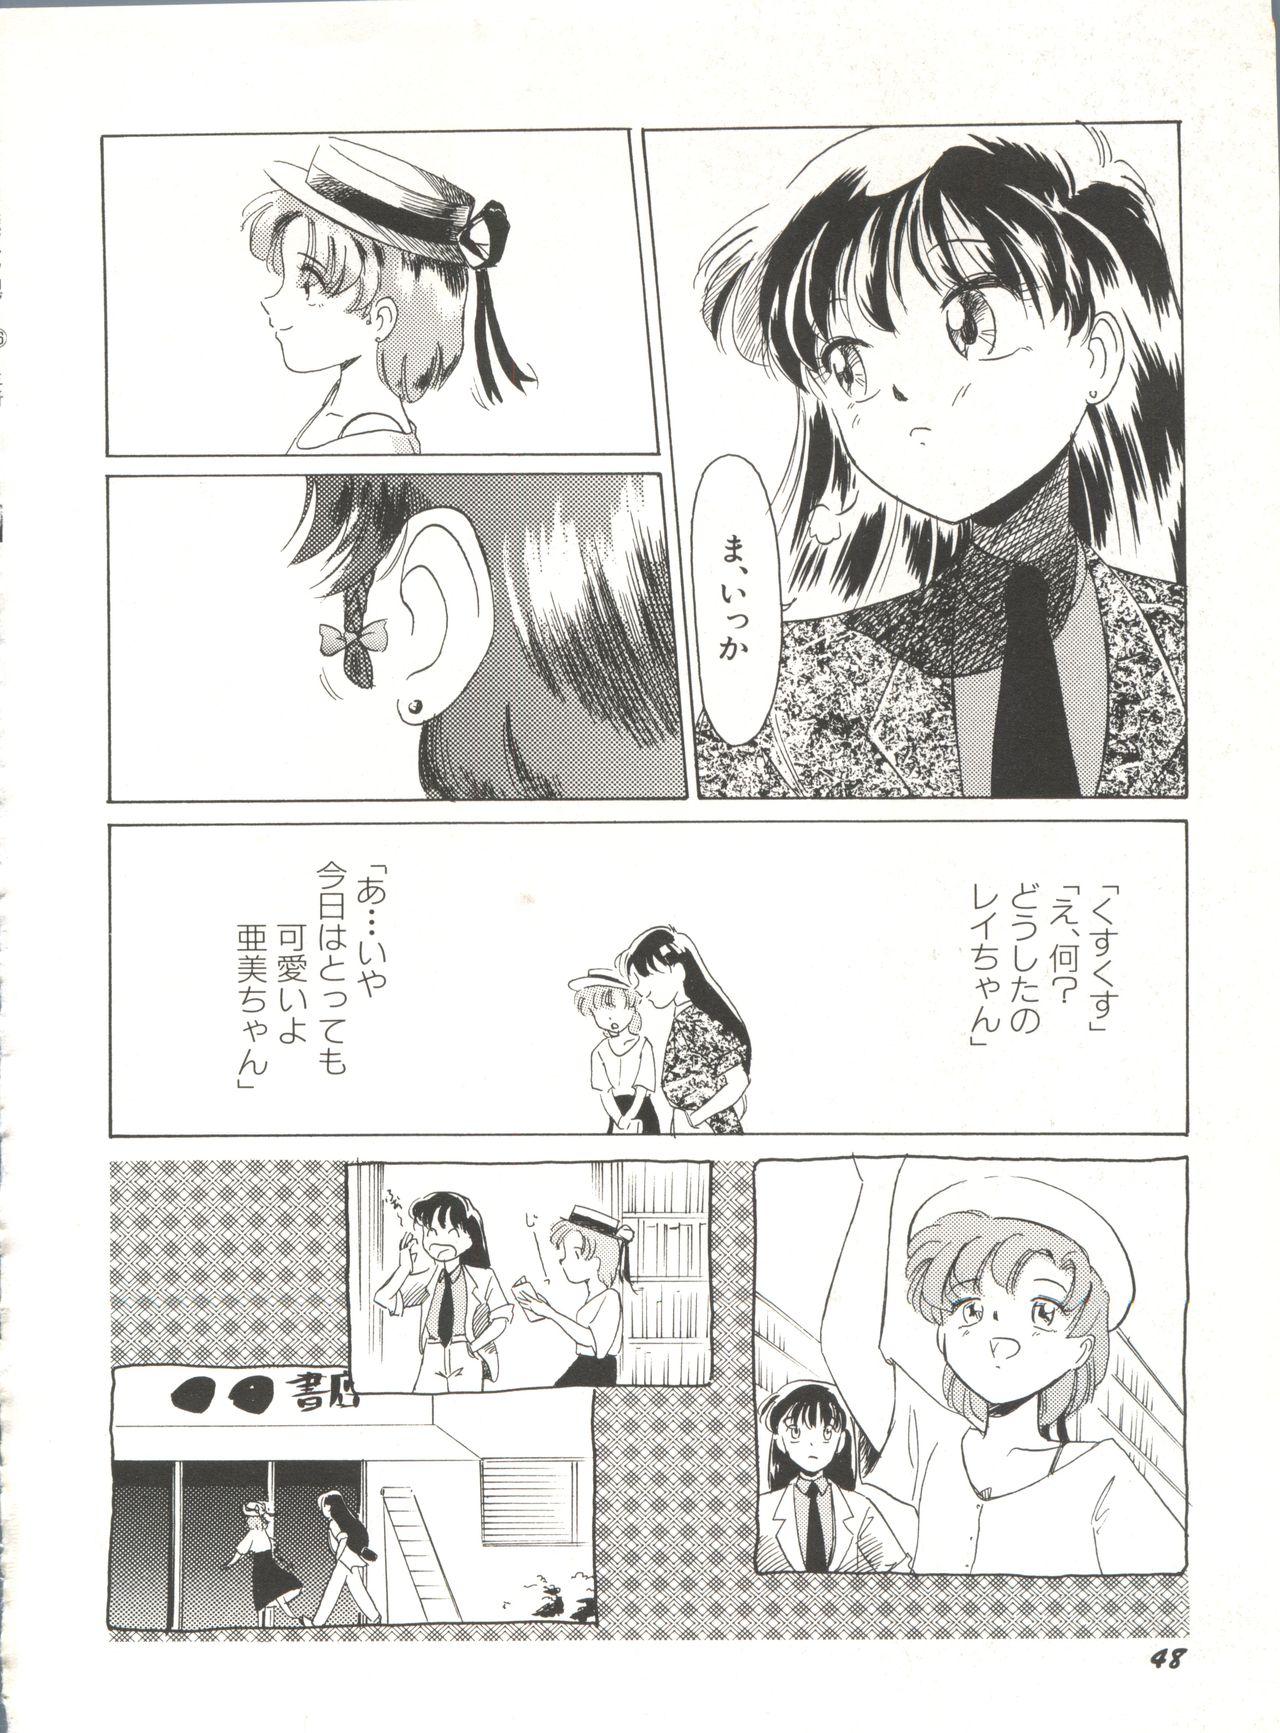 Bishoujo Doujinshi Anthology 16 - Moon Paradise 10 Tsuki no Rakuen 52